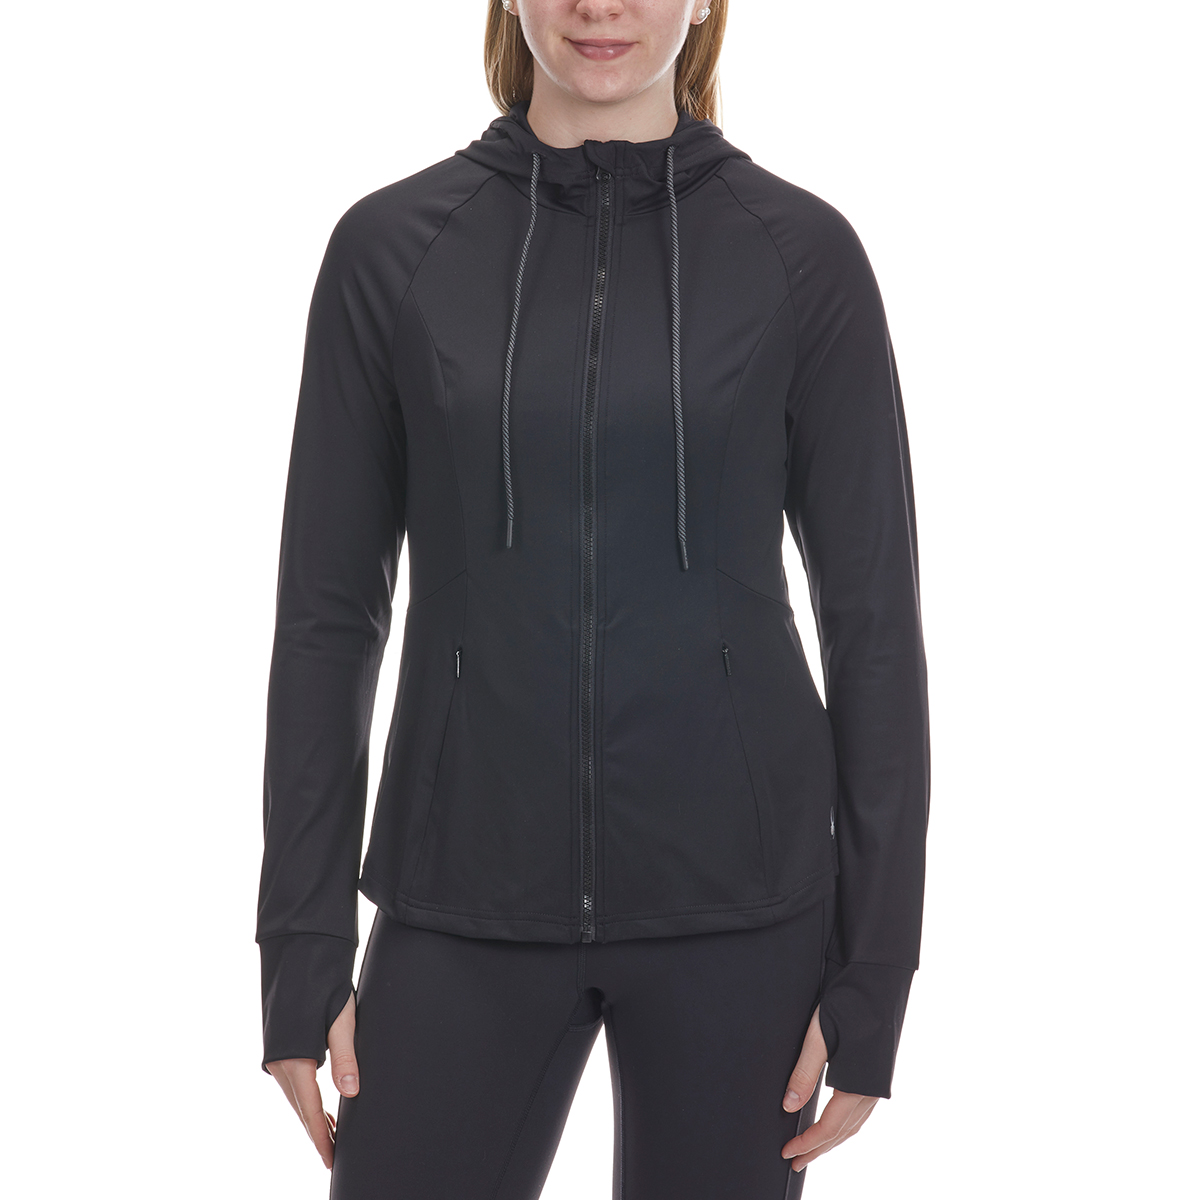 Spyder Women's Full-Zip Hooded Jacket